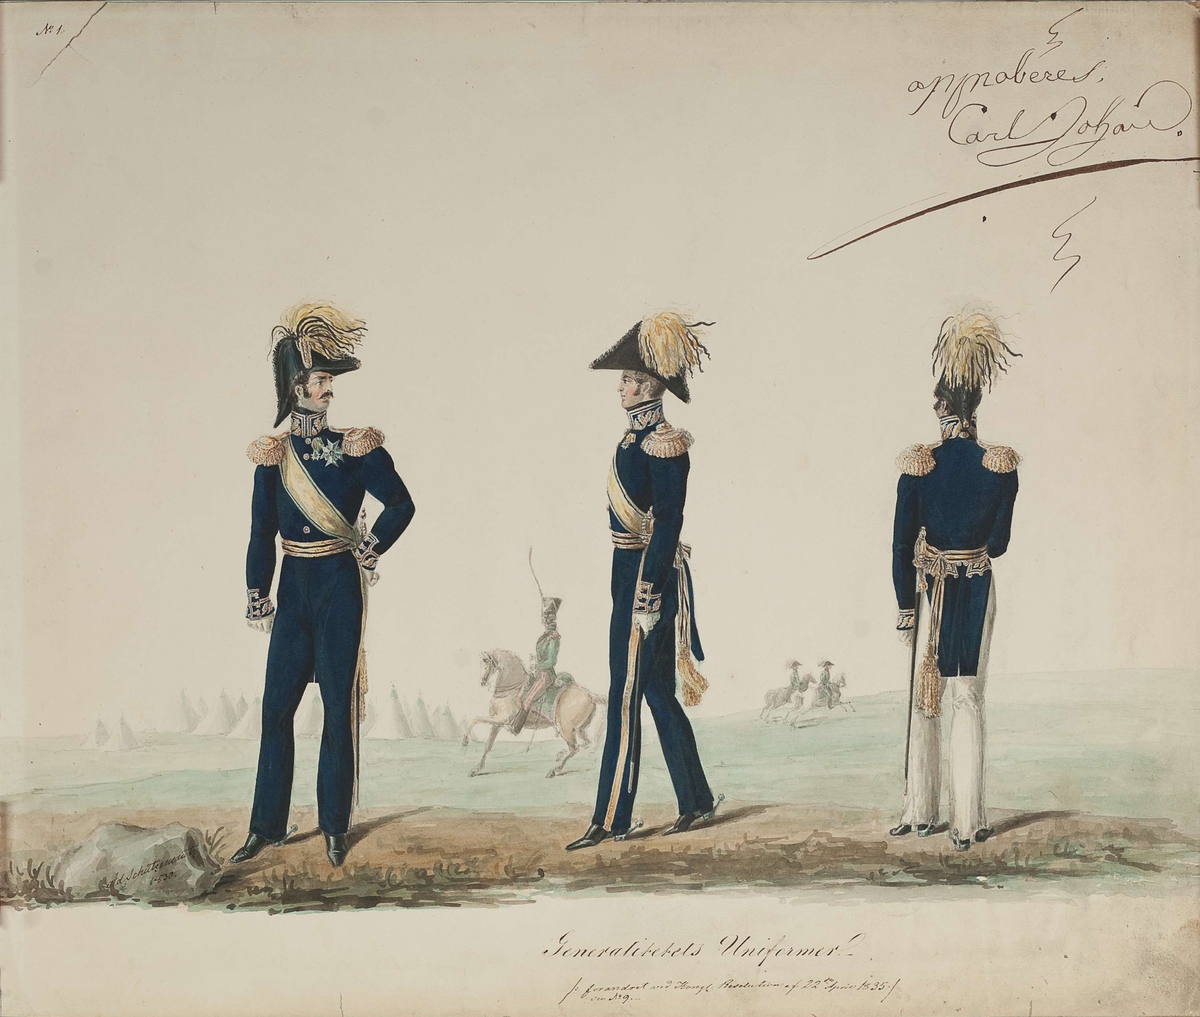 Approbasjonstegning for Generalitetets uniformer, 1835. Tekst: No 1. Generalitetets Uniformer. Forandret ved Kongl. Resolution af 22de April 1835.